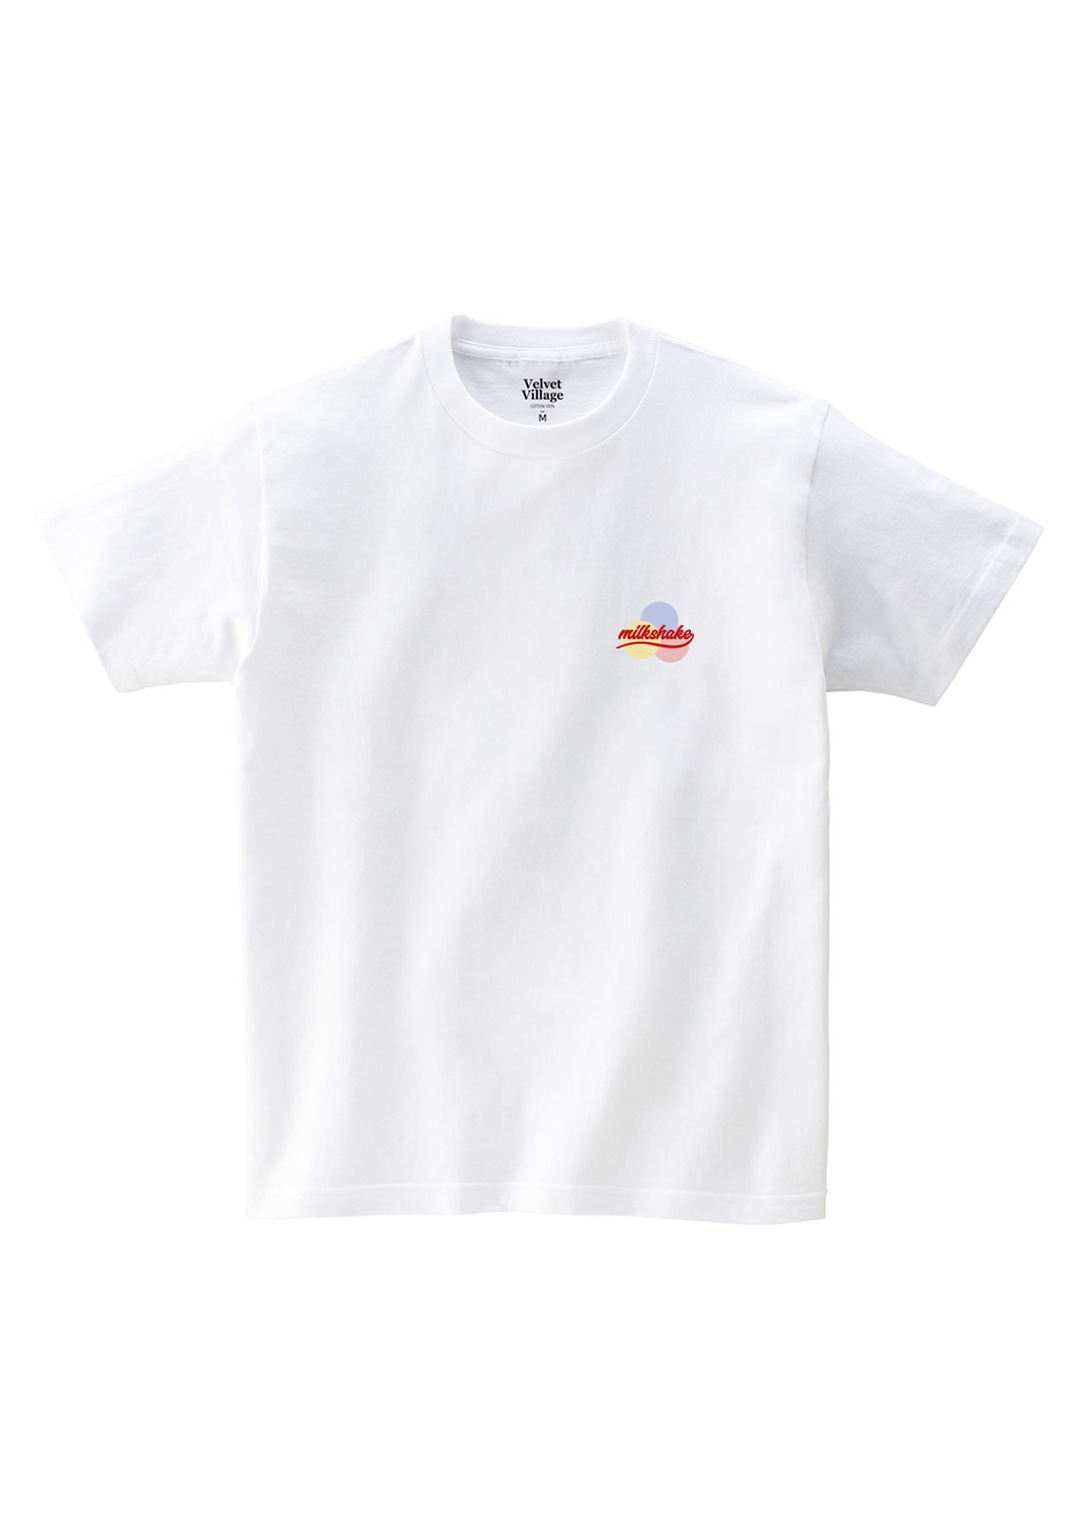 Milkshake T-shirt (White)